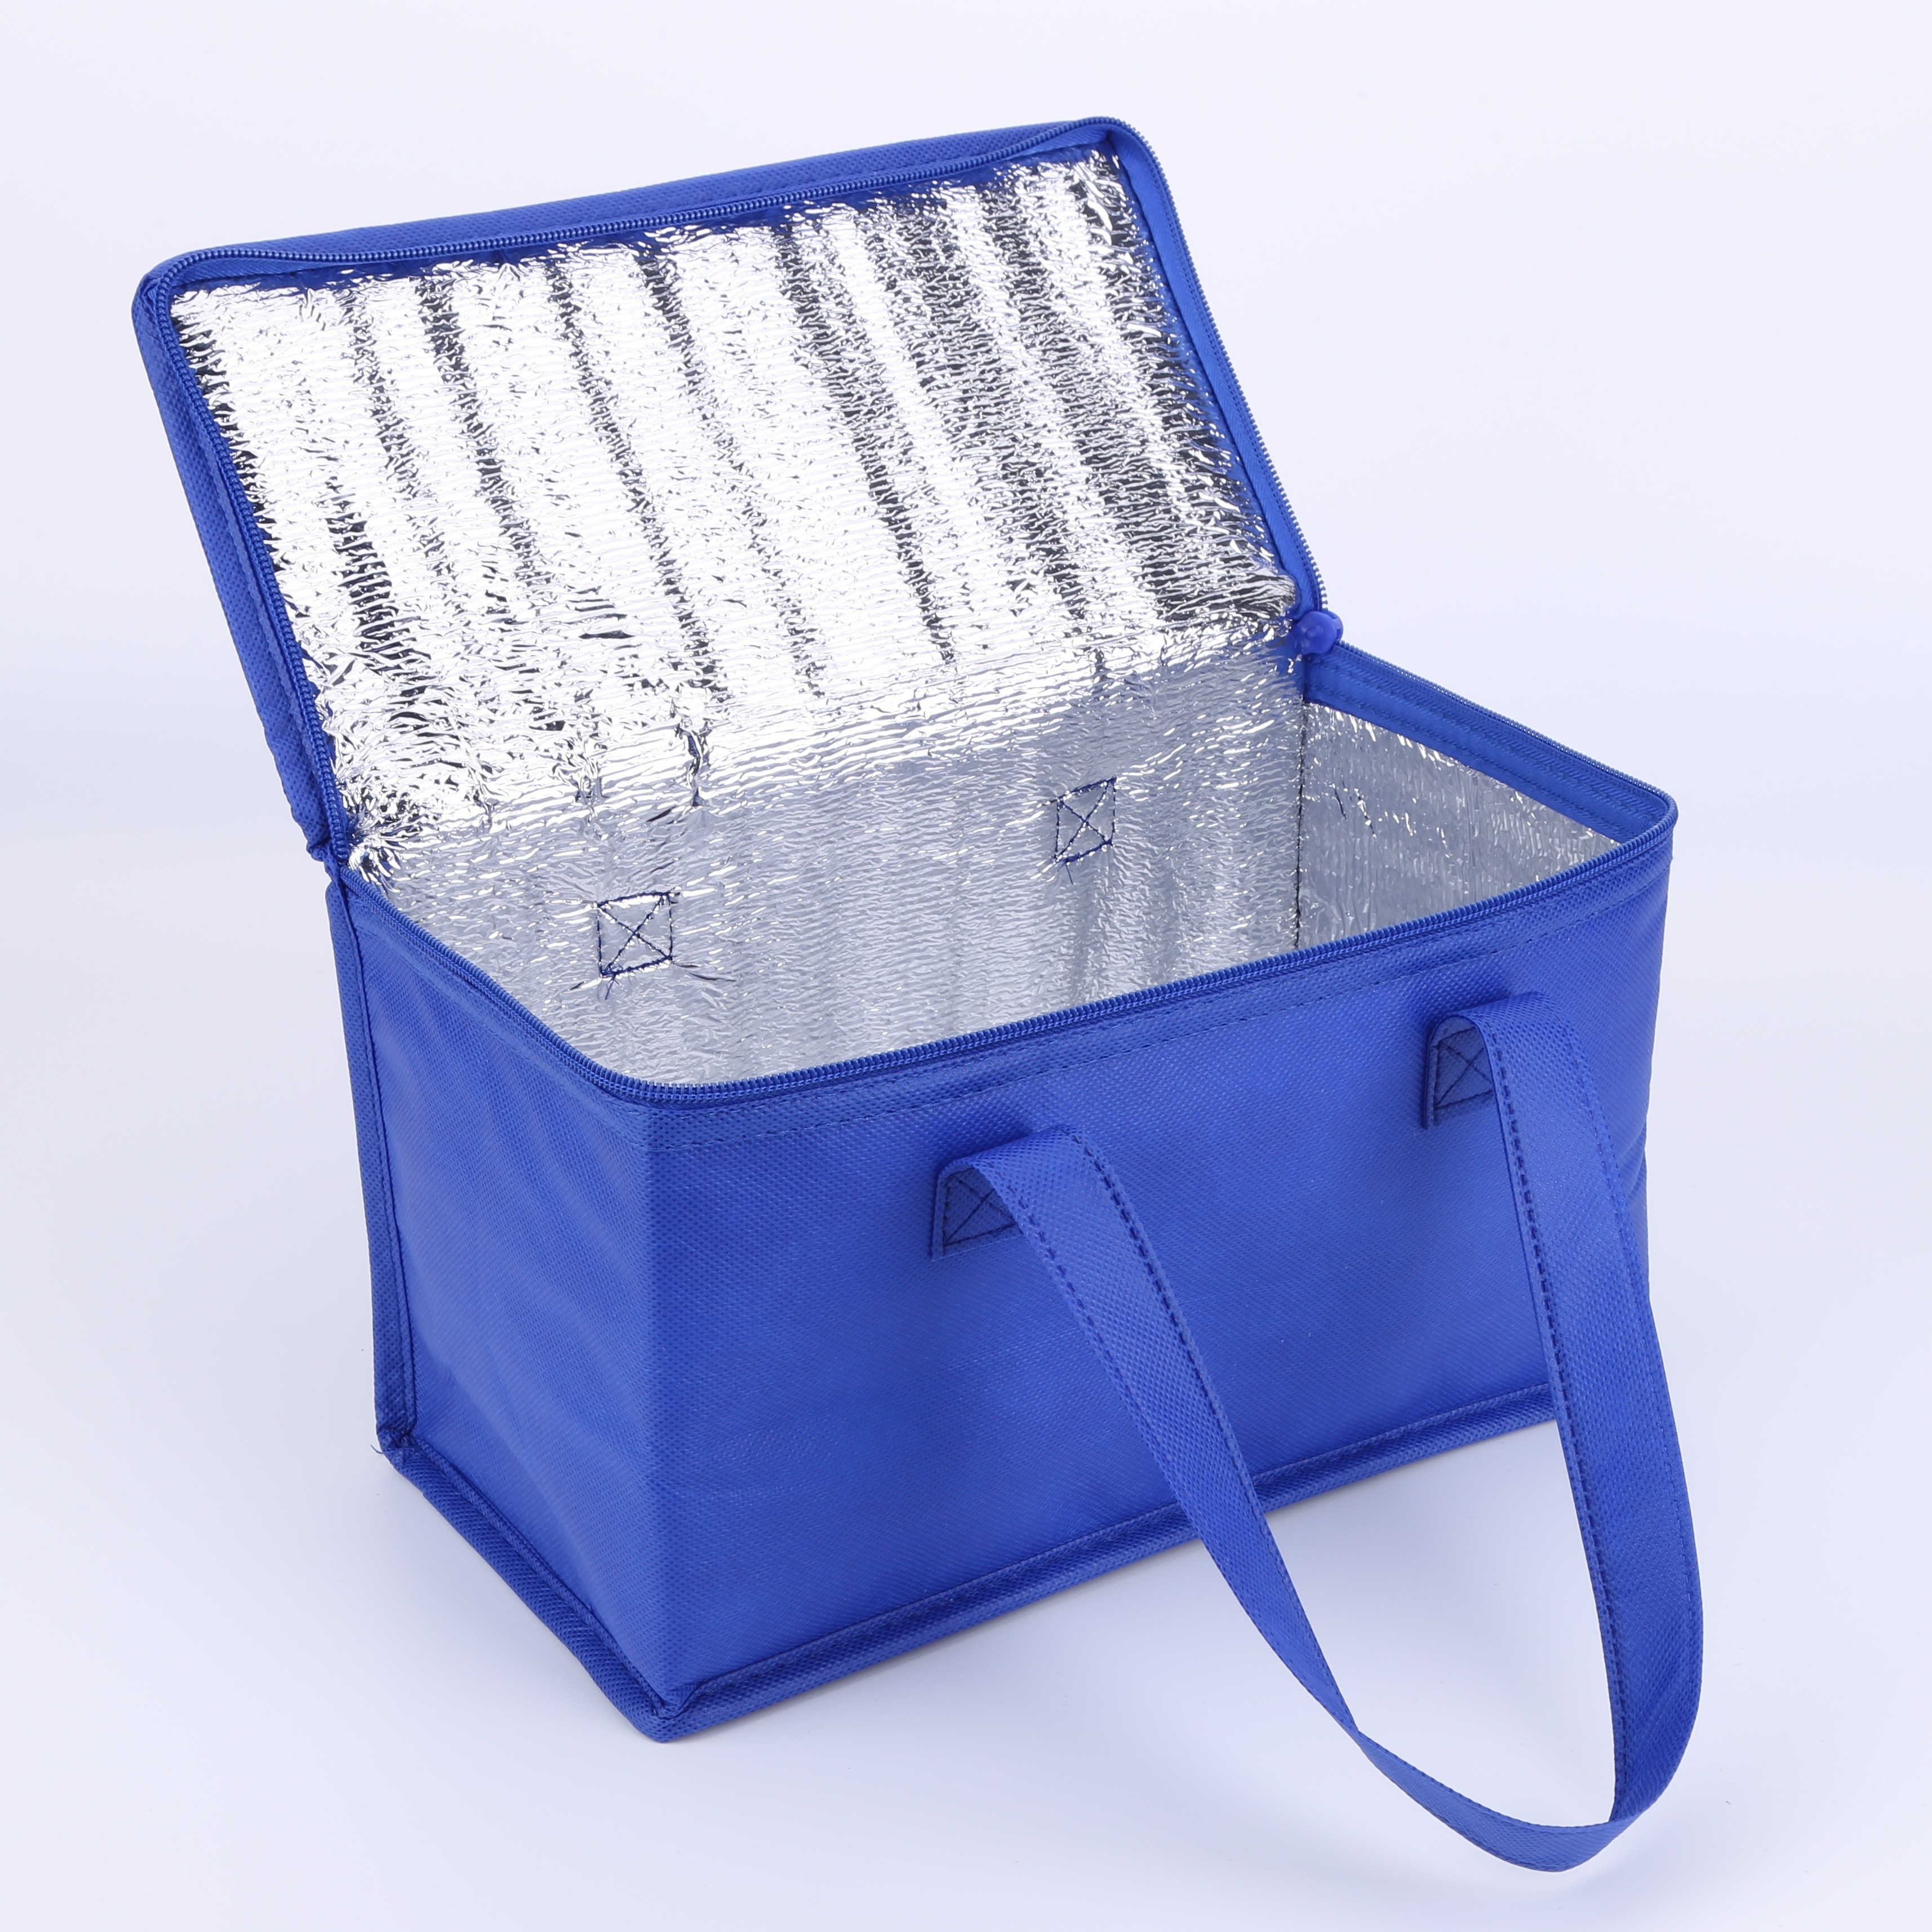 Bolsa / mochila termica porta alimentos nevera 15 litros forro interior  peva, con espuma aislante, color azul